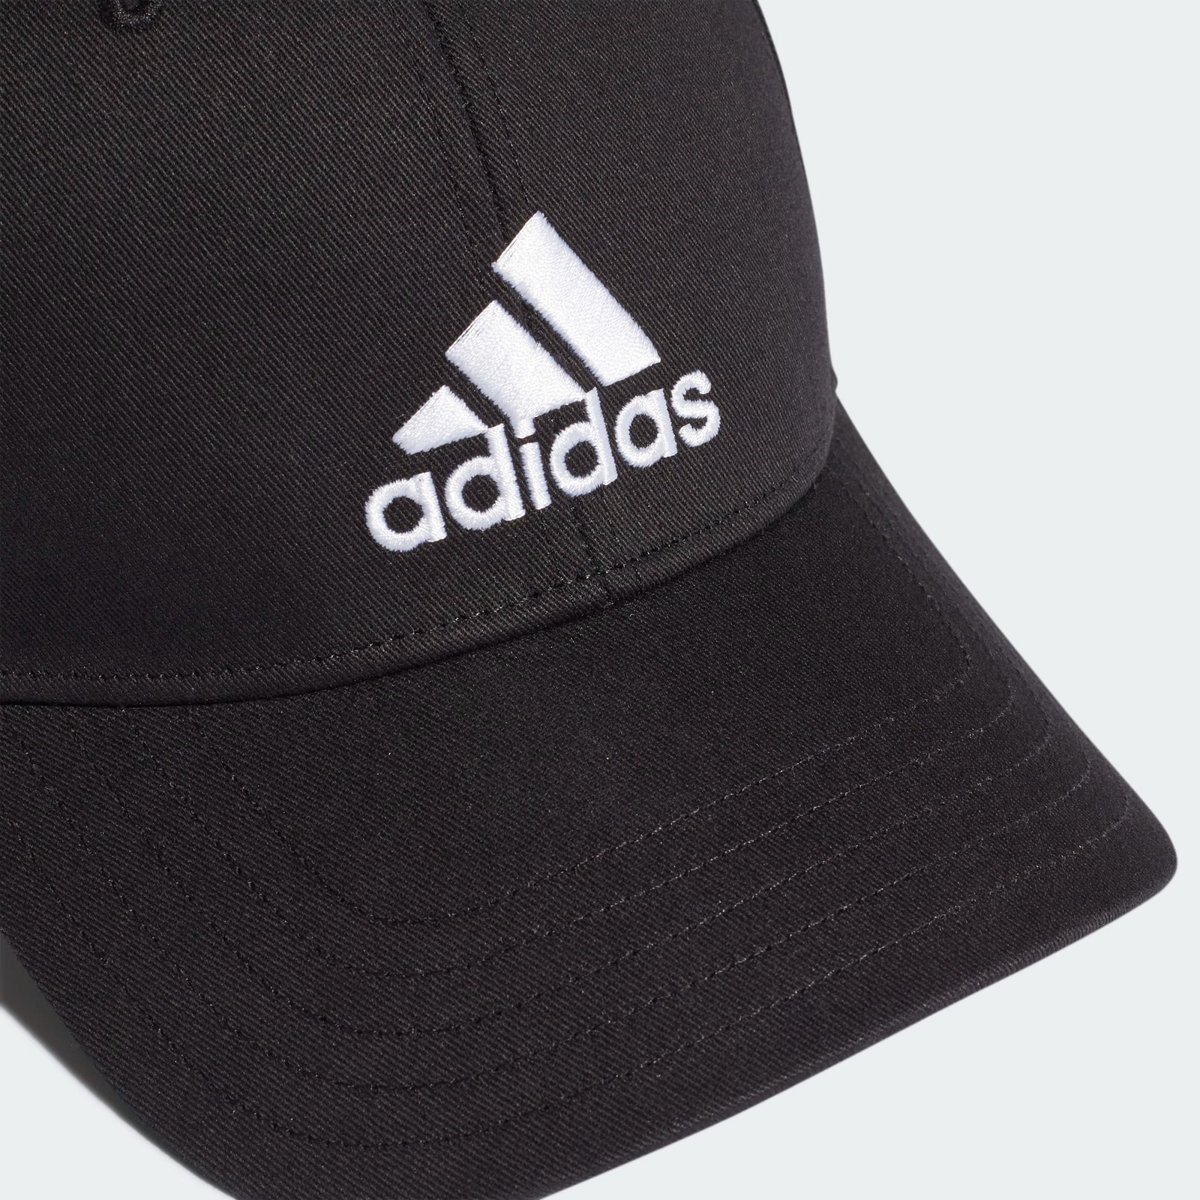 adidas - Baseball Cap Cotton - Zwarte Pet - Men - Zwart | bol